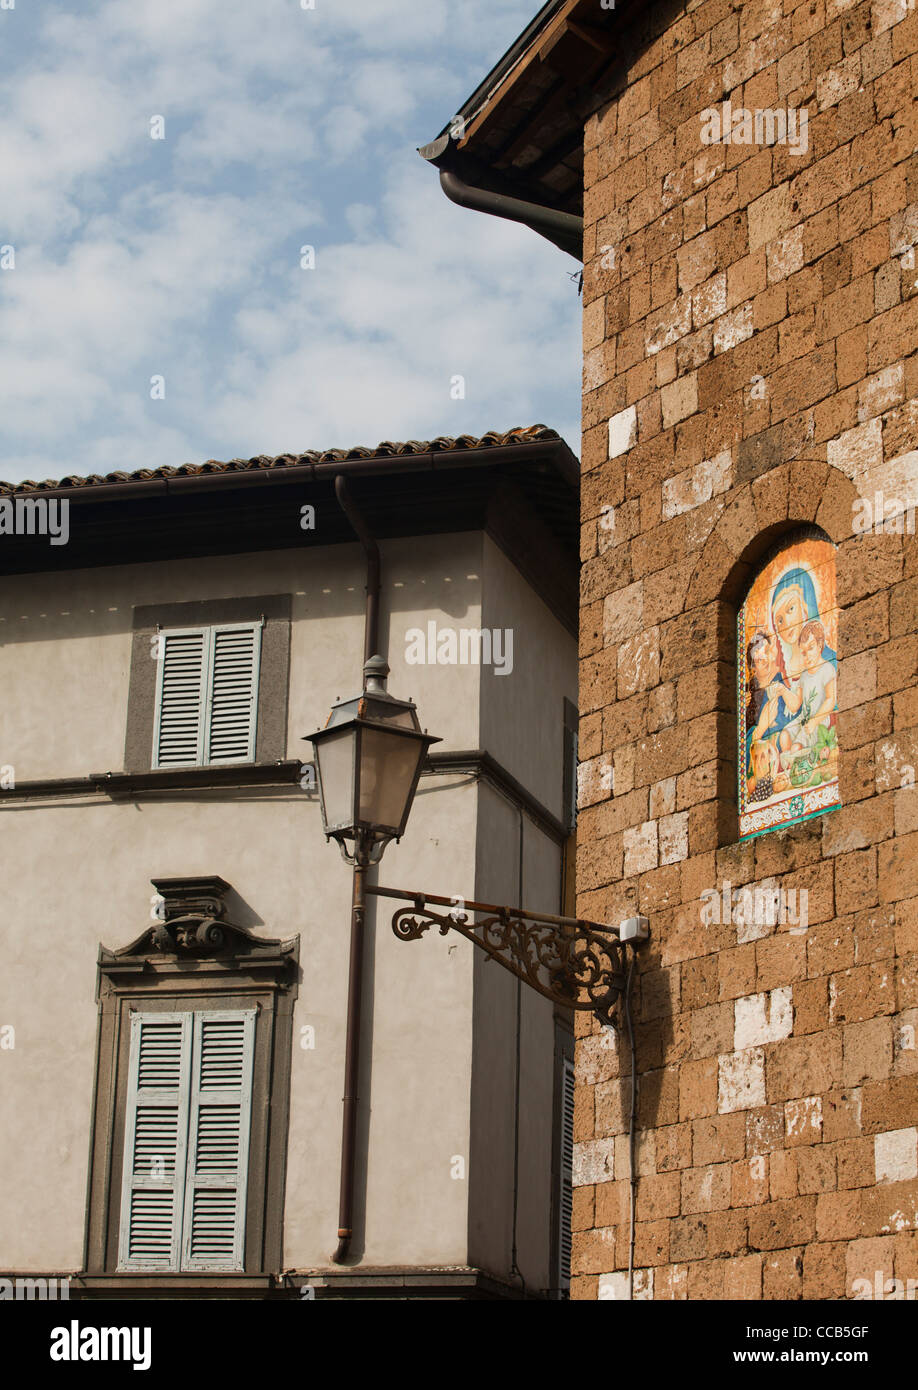 Un riempito nella finestra decorata con una immagine di Maria e di Gesù. Orvieto, Italia. Foto Stock